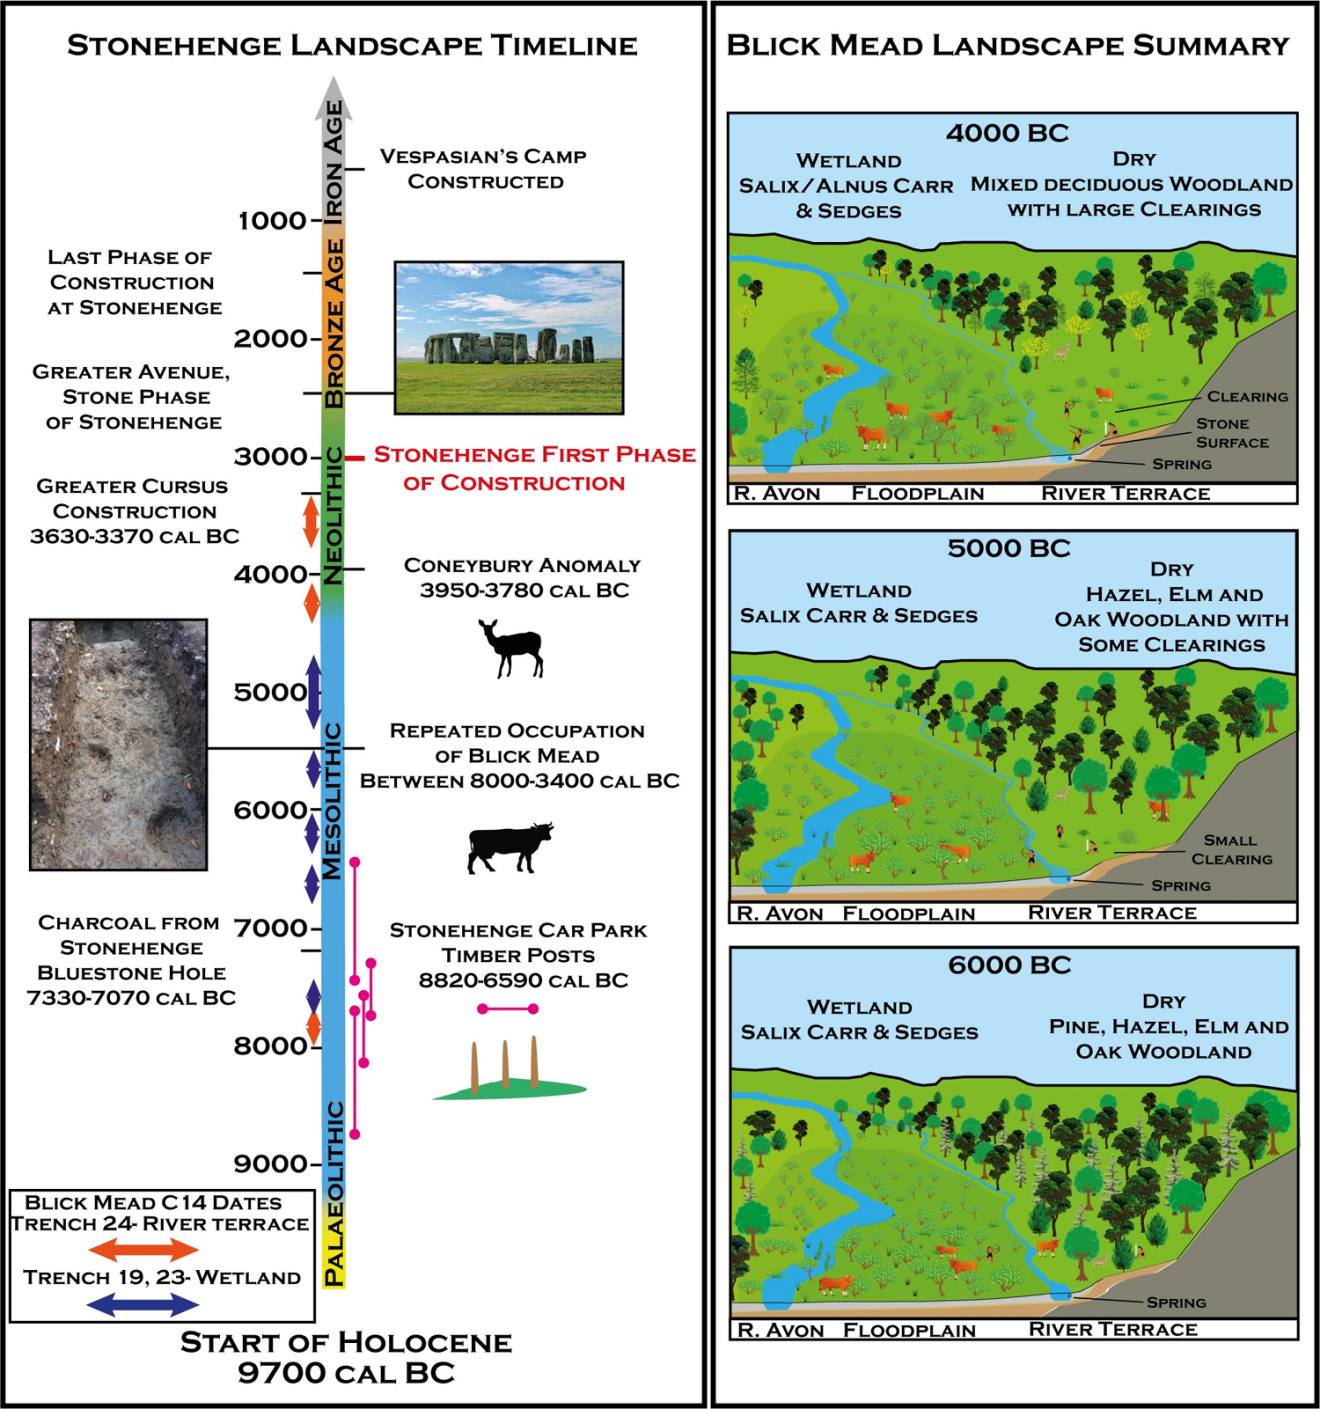 Α) Χρονοδιάγραμμα του τοπίου του Στόουνχεντζ, συμπεριλαμβανομένων των ημερομηνιών ραδιενεργού άνθρακα από το Blick Mead και άλλους σημαντικούς αρχαιολογικούς χώρους παγκόσμιας κληρονομιάς του Stonehenge. Β) Αναπαράσταση της εξέλιξης της ιστορίας της βλάστησης στο Blick Mead με βάση τα παλαιοπεριβαλλοντικά δεδομένα.